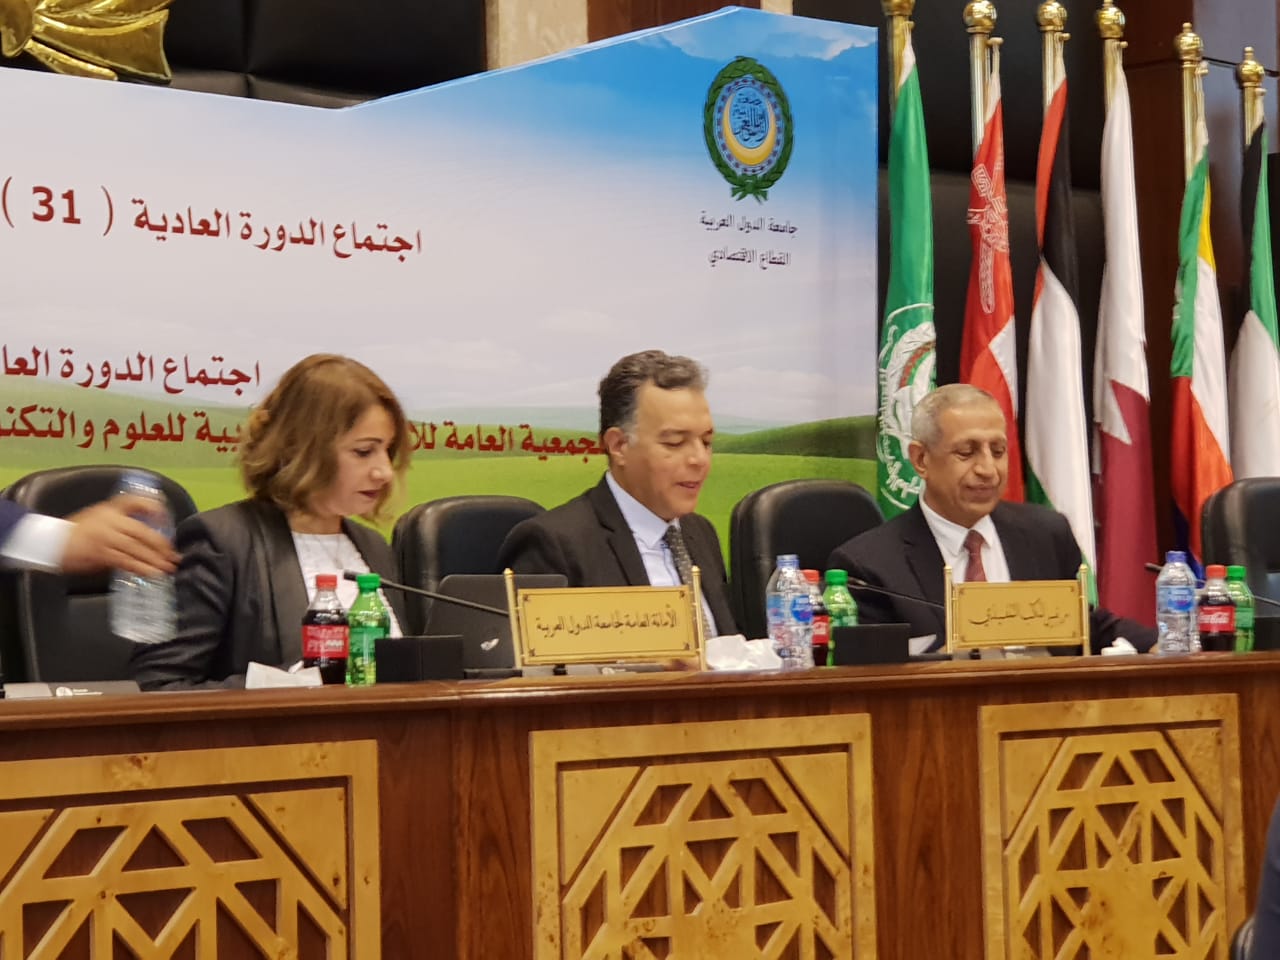  وزير النقل يفتتح  فعاليات اجتماع مجلس وزراء النقل العرب بمقر الأكاديمية العربية (2)